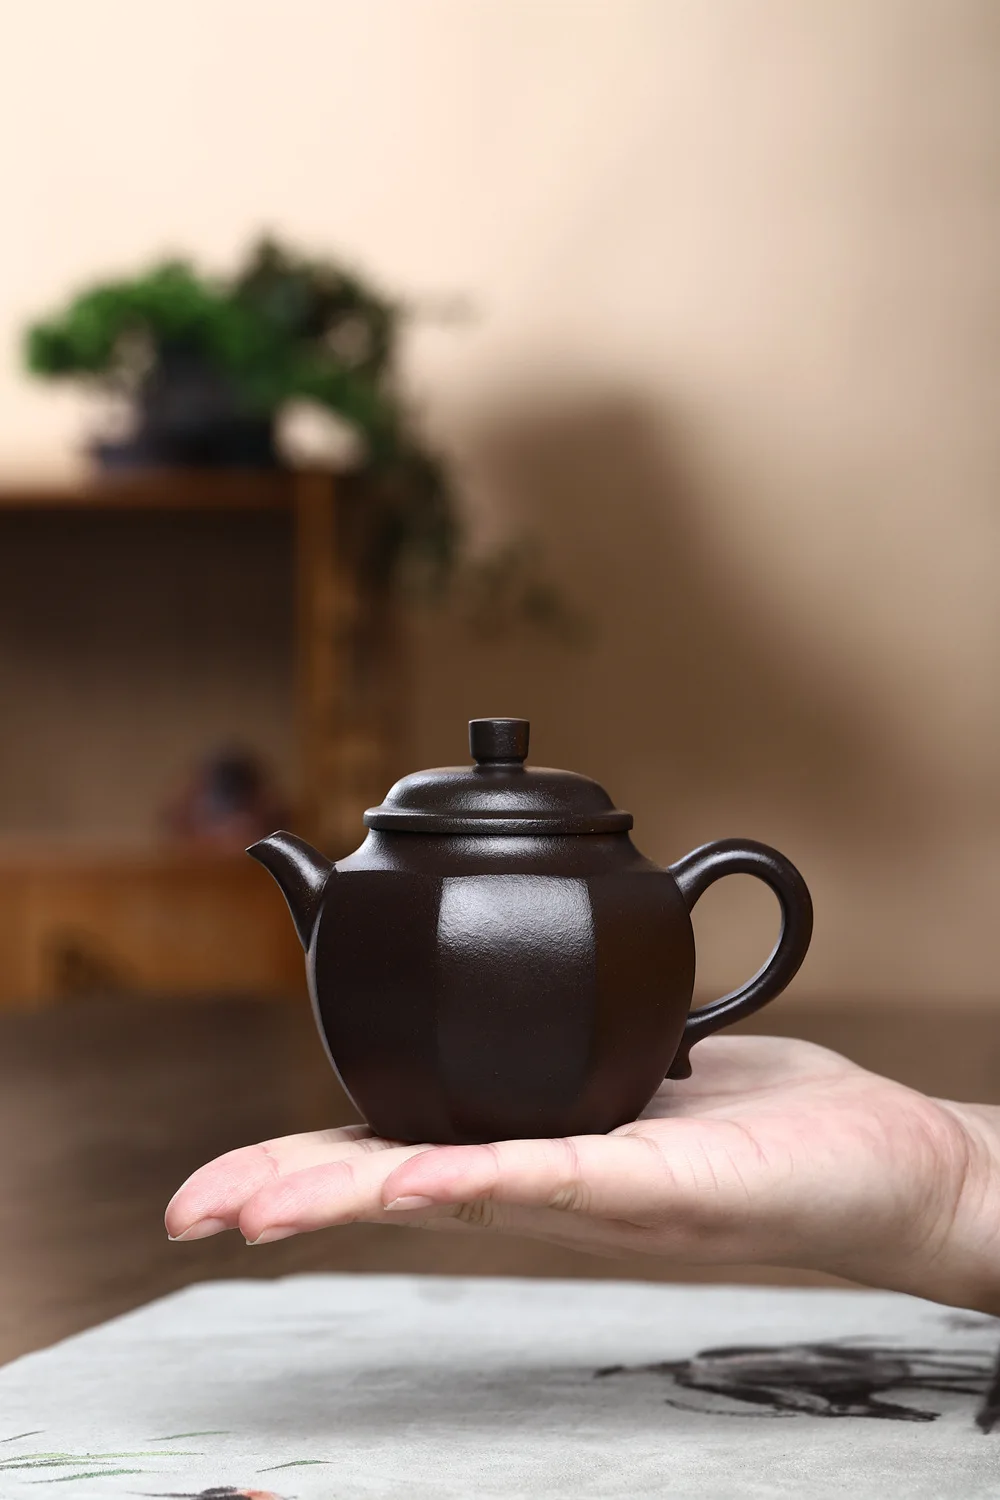 yixing feito mão pote de chá seis partes forma argila roxa bule de minério cru beleza chaleira chá chinês cerimônia presentes personalizados